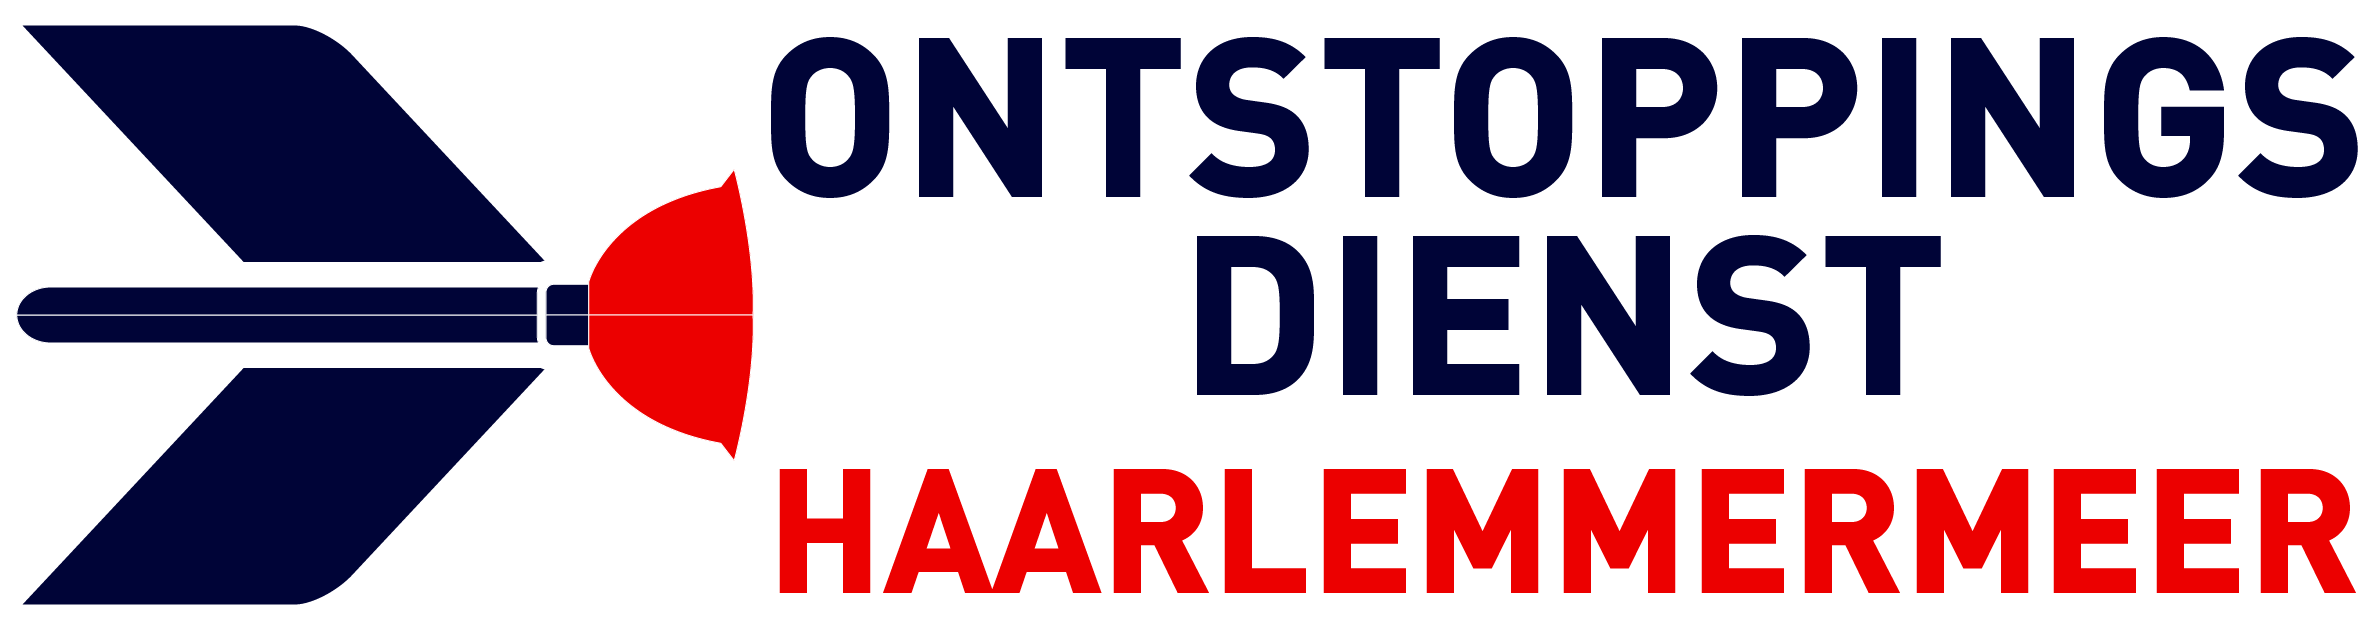 Ontstoppingsdienst Haarlemmermeer logo